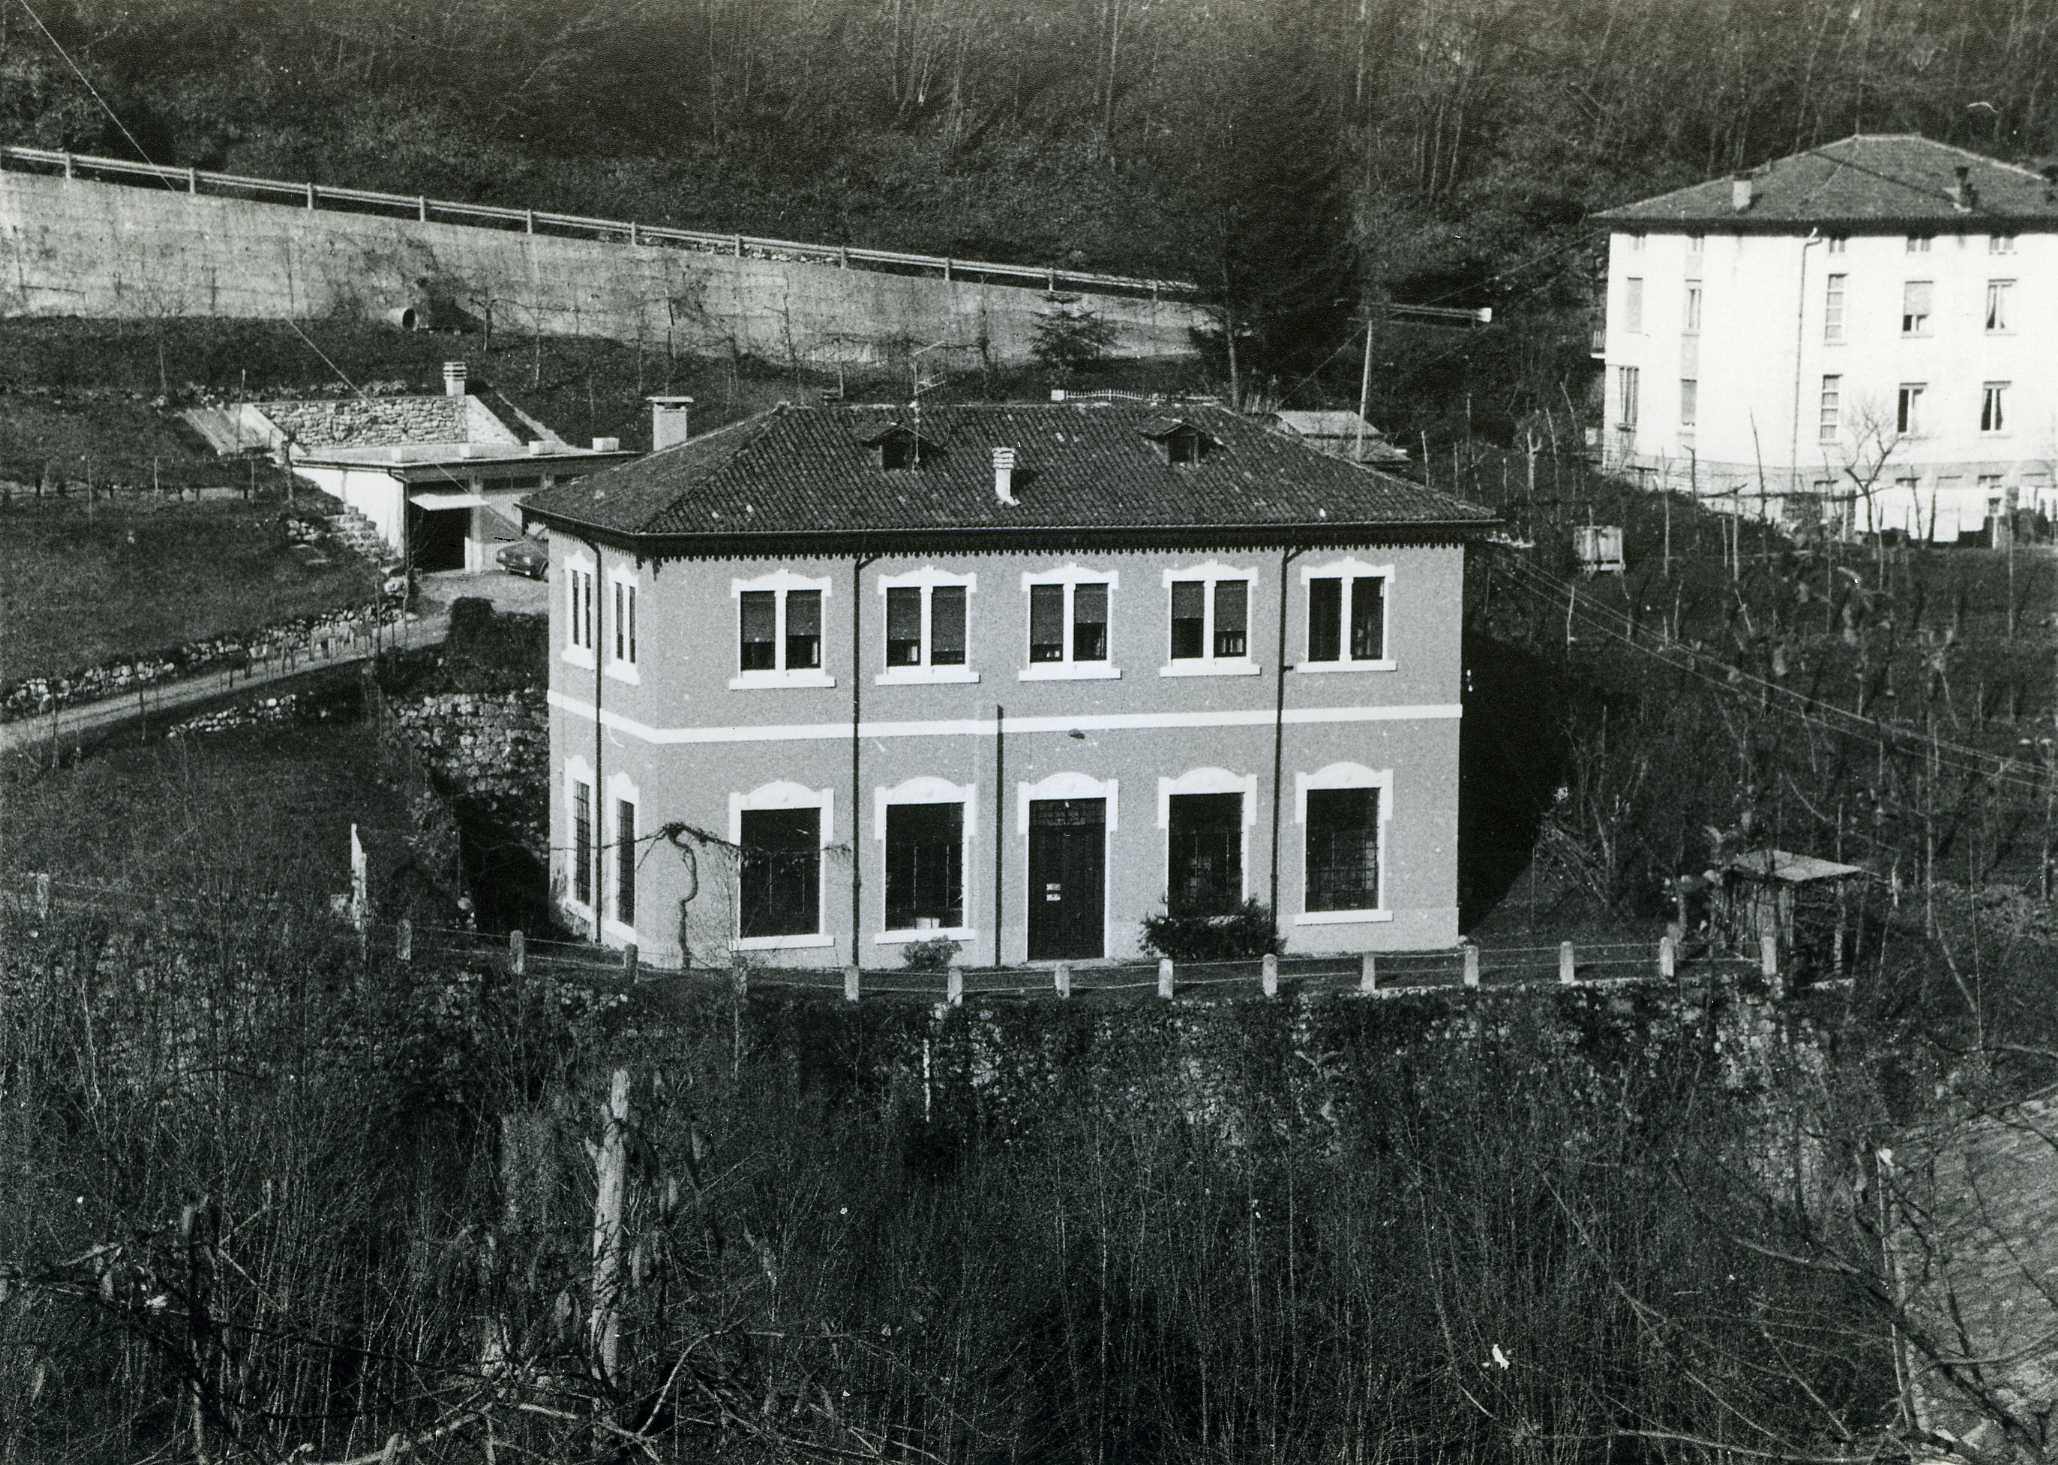 Centrale idroelettrica Frizzi (centale, idroelettrica) - Recoaro Terme (VI)  (XX)